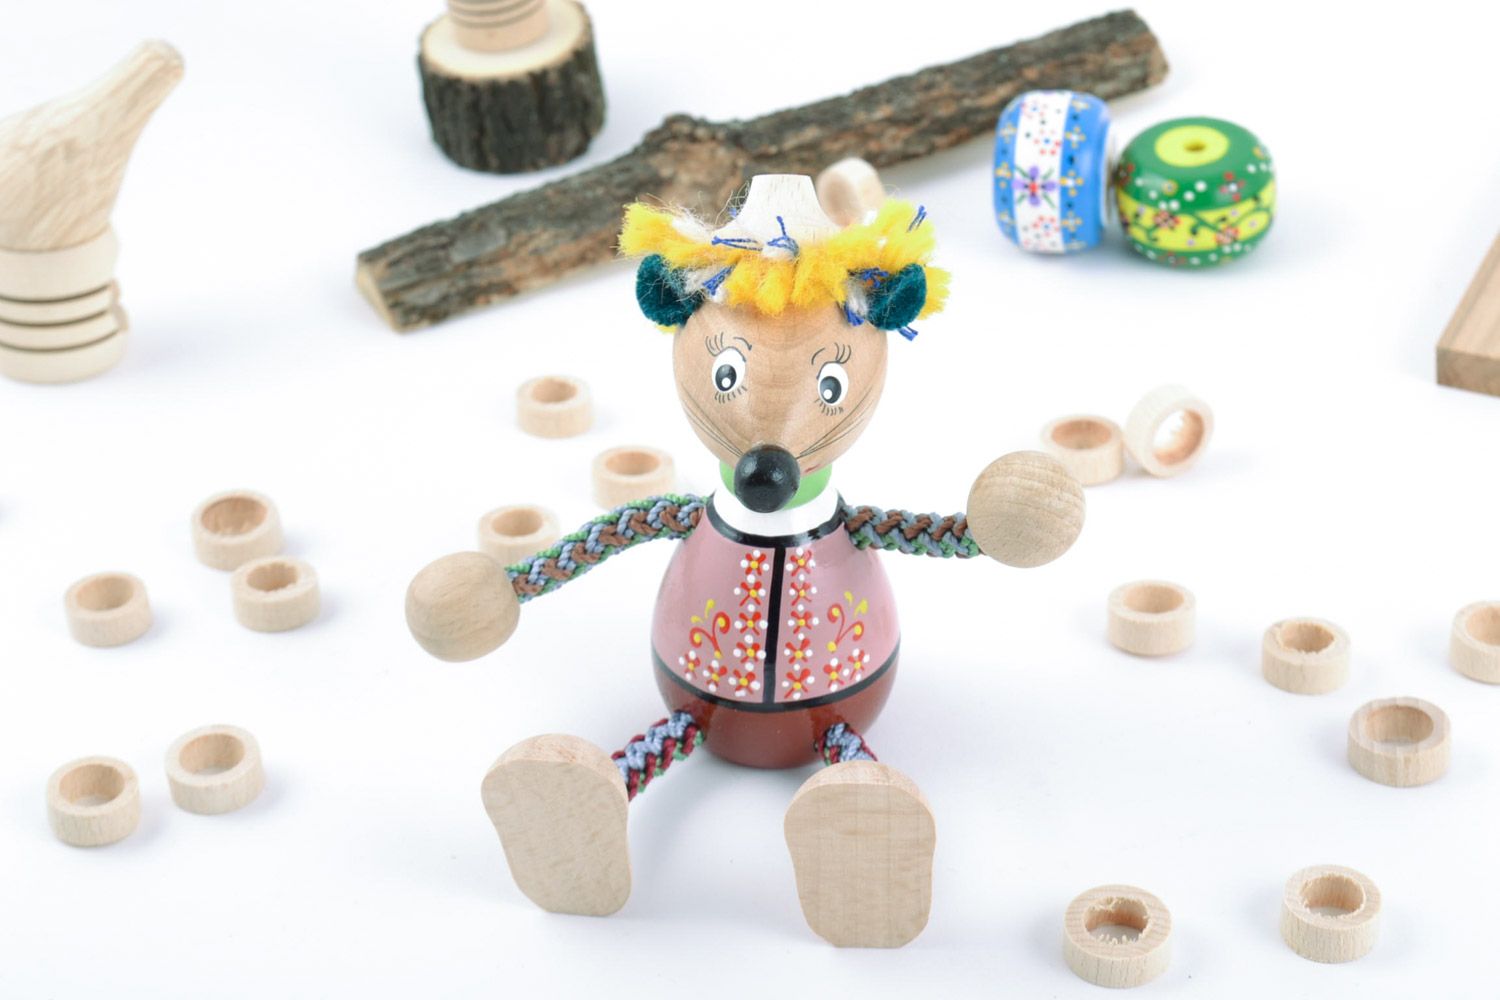 Öko handmade Spielzeug Maus mit Bemalung künstlerisch einzigartig schön interessant foto 1